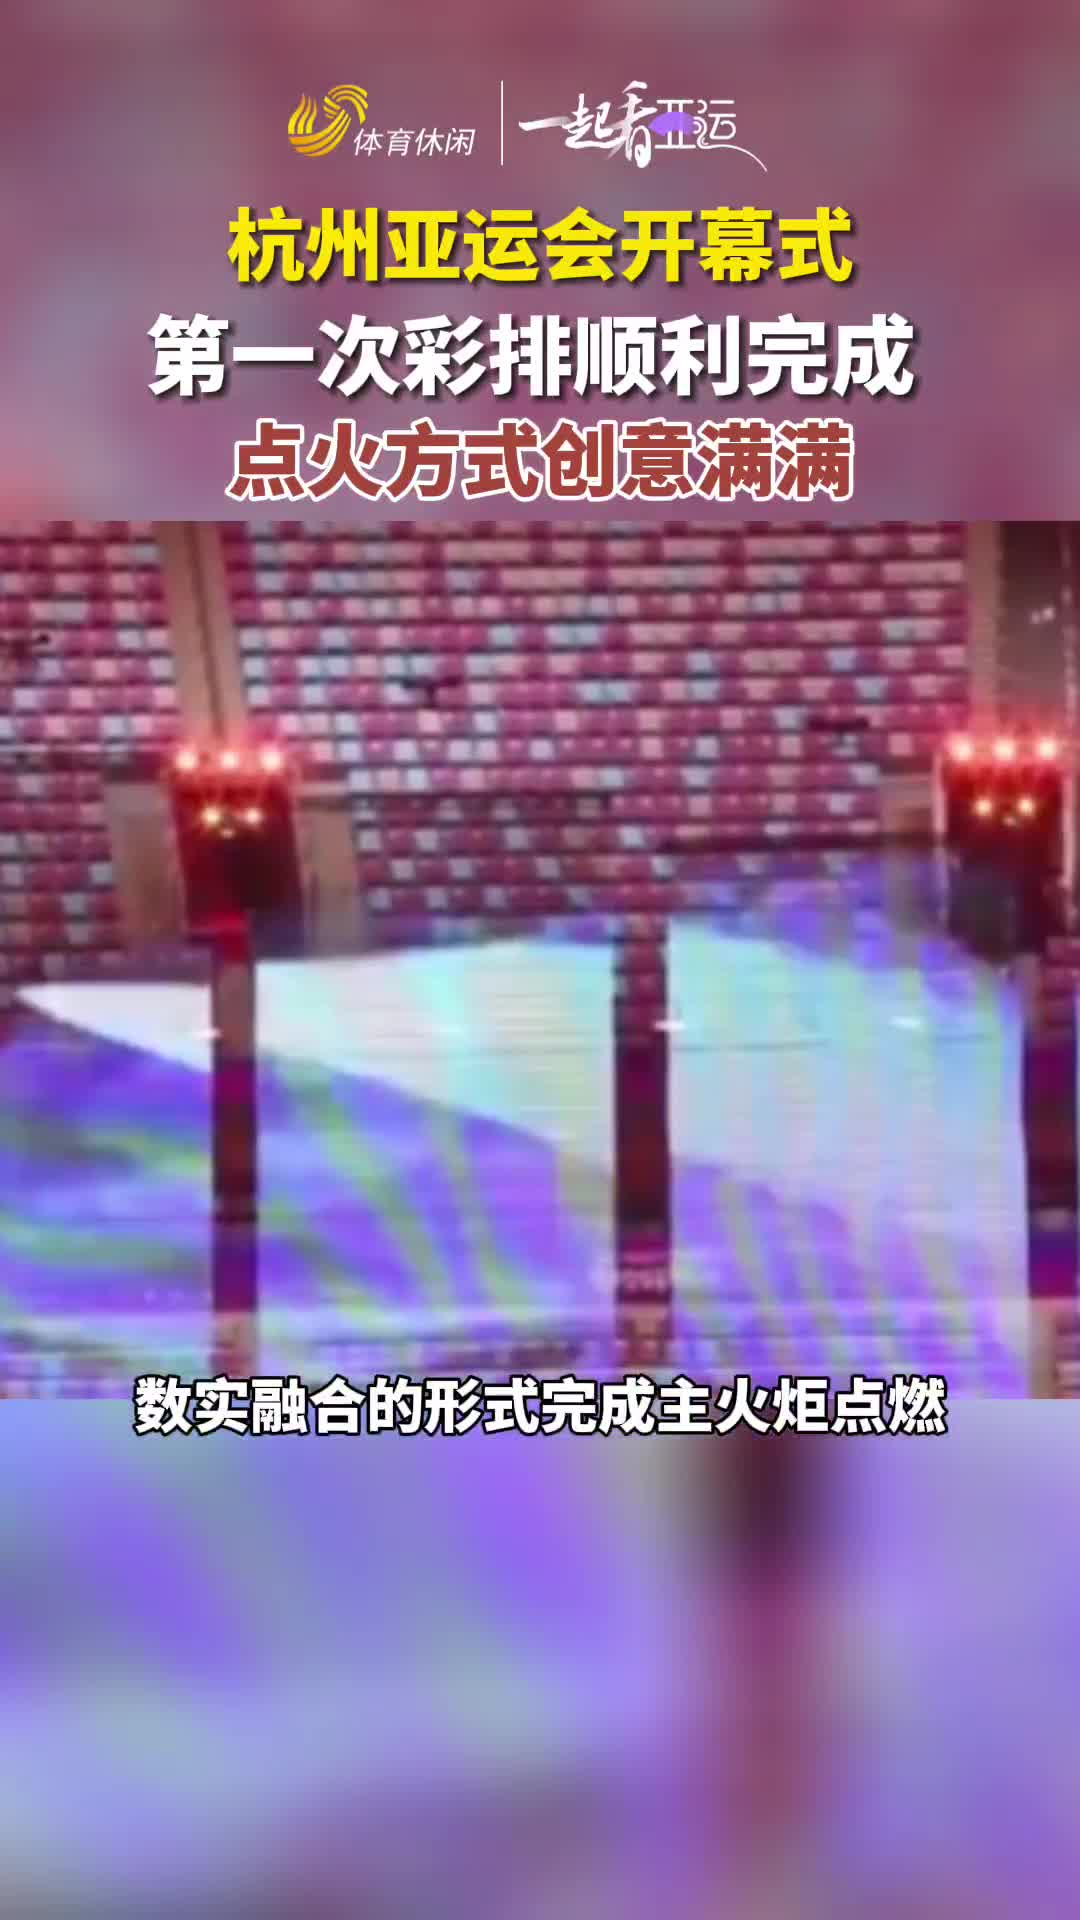 一起看亚运丨杭州亚运会开幕式彩排顺利完成  点火方式创意满满